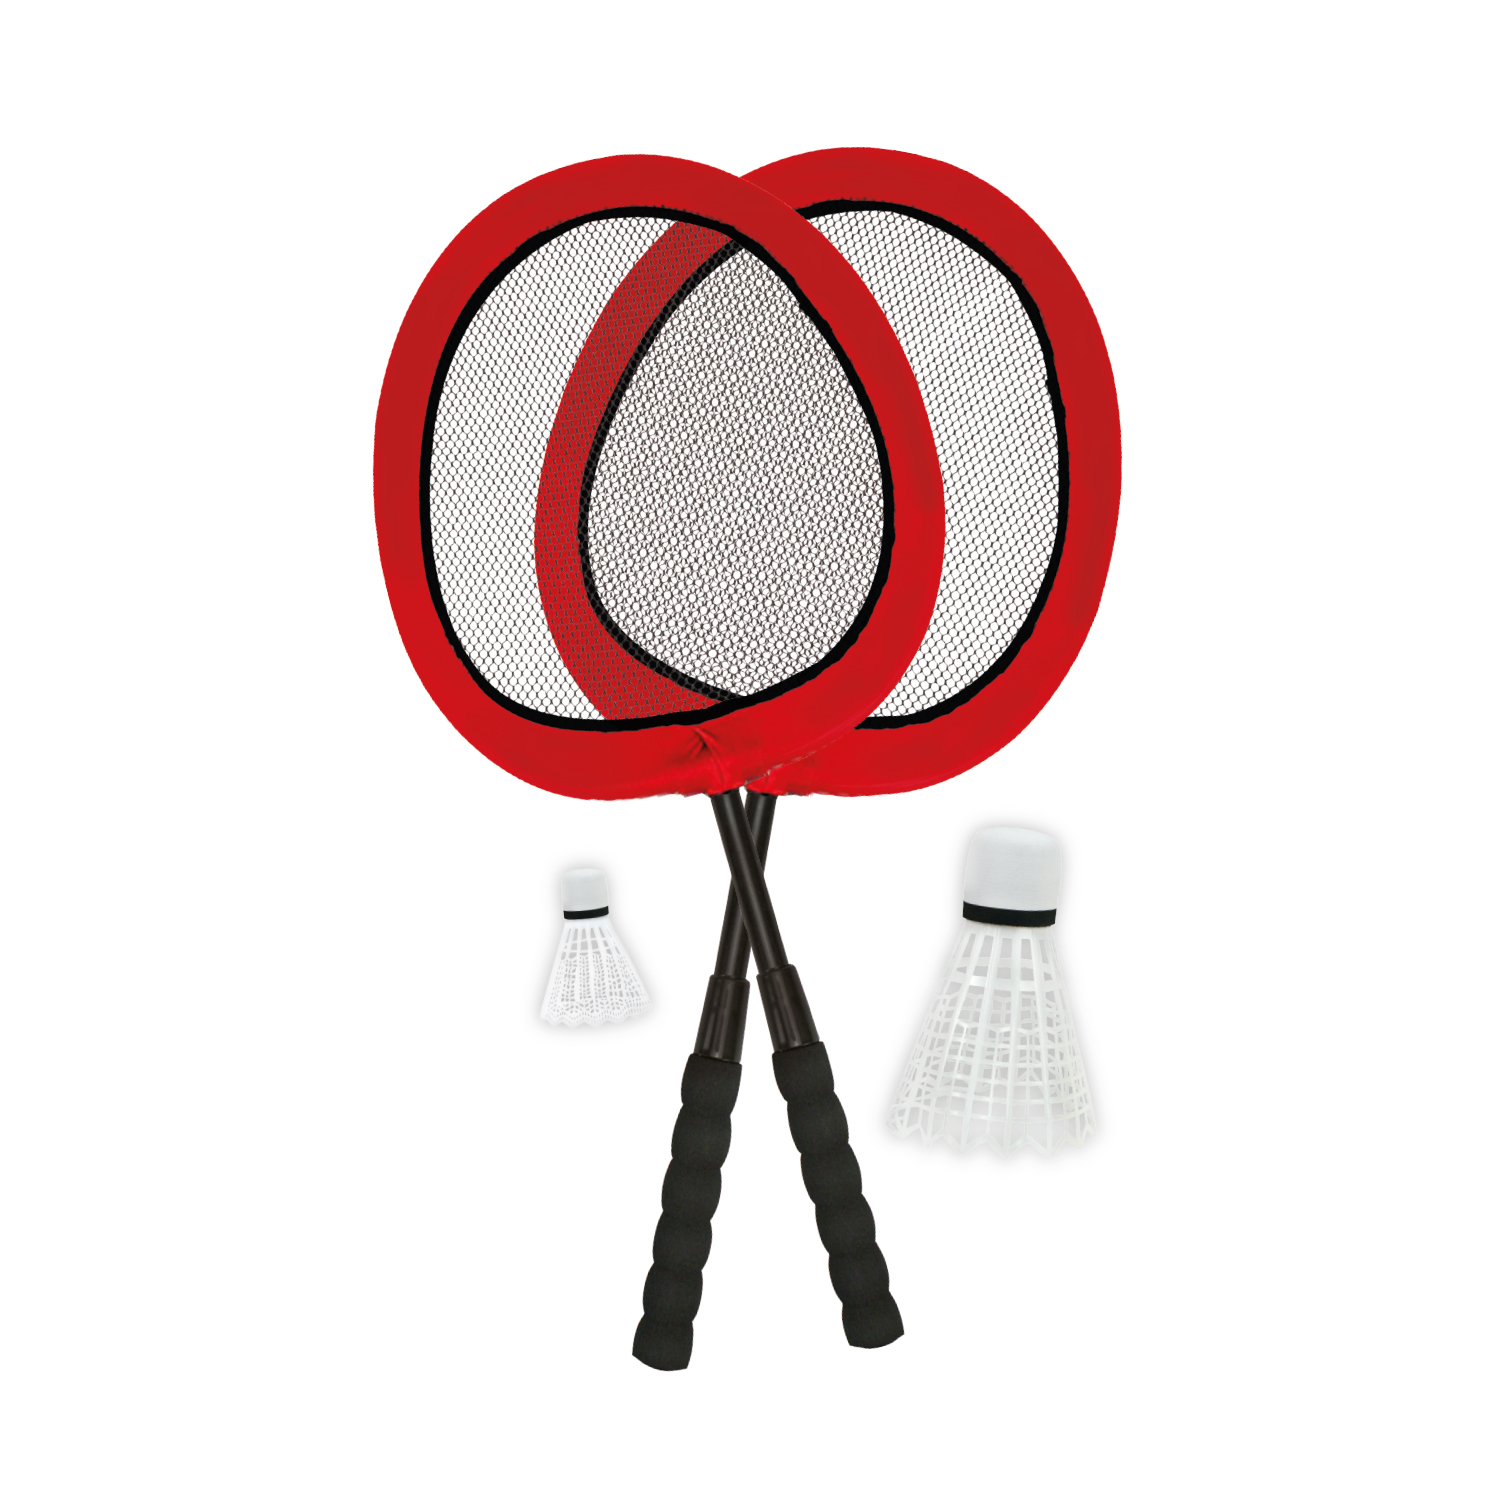 Jumbo Badminton Set